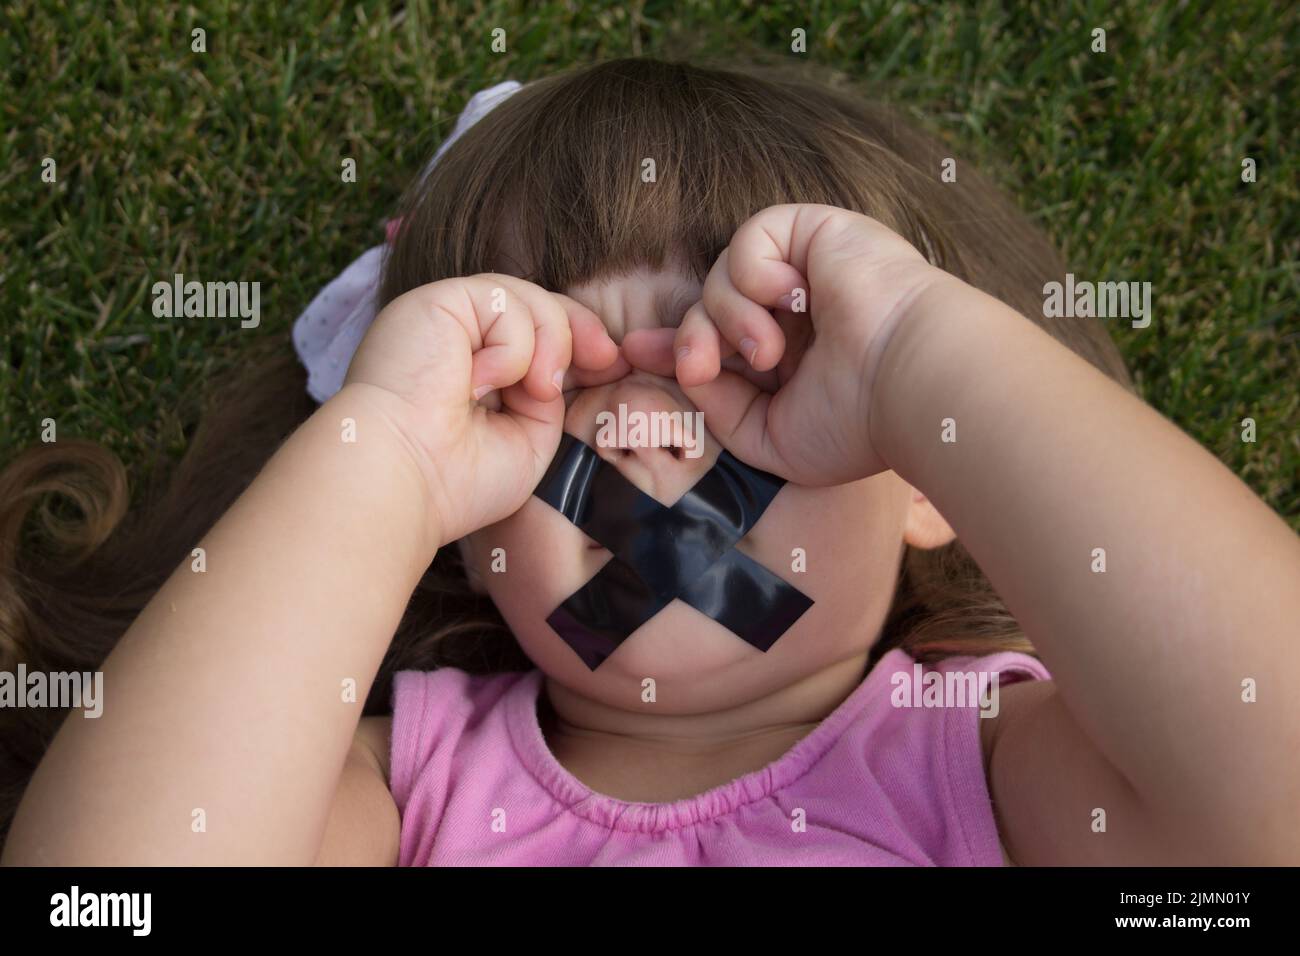 Immagine di una bambina adorabile che gli sfrega gli occhi e ha nastro elettrico per chiudere la bocca. Foto Stock